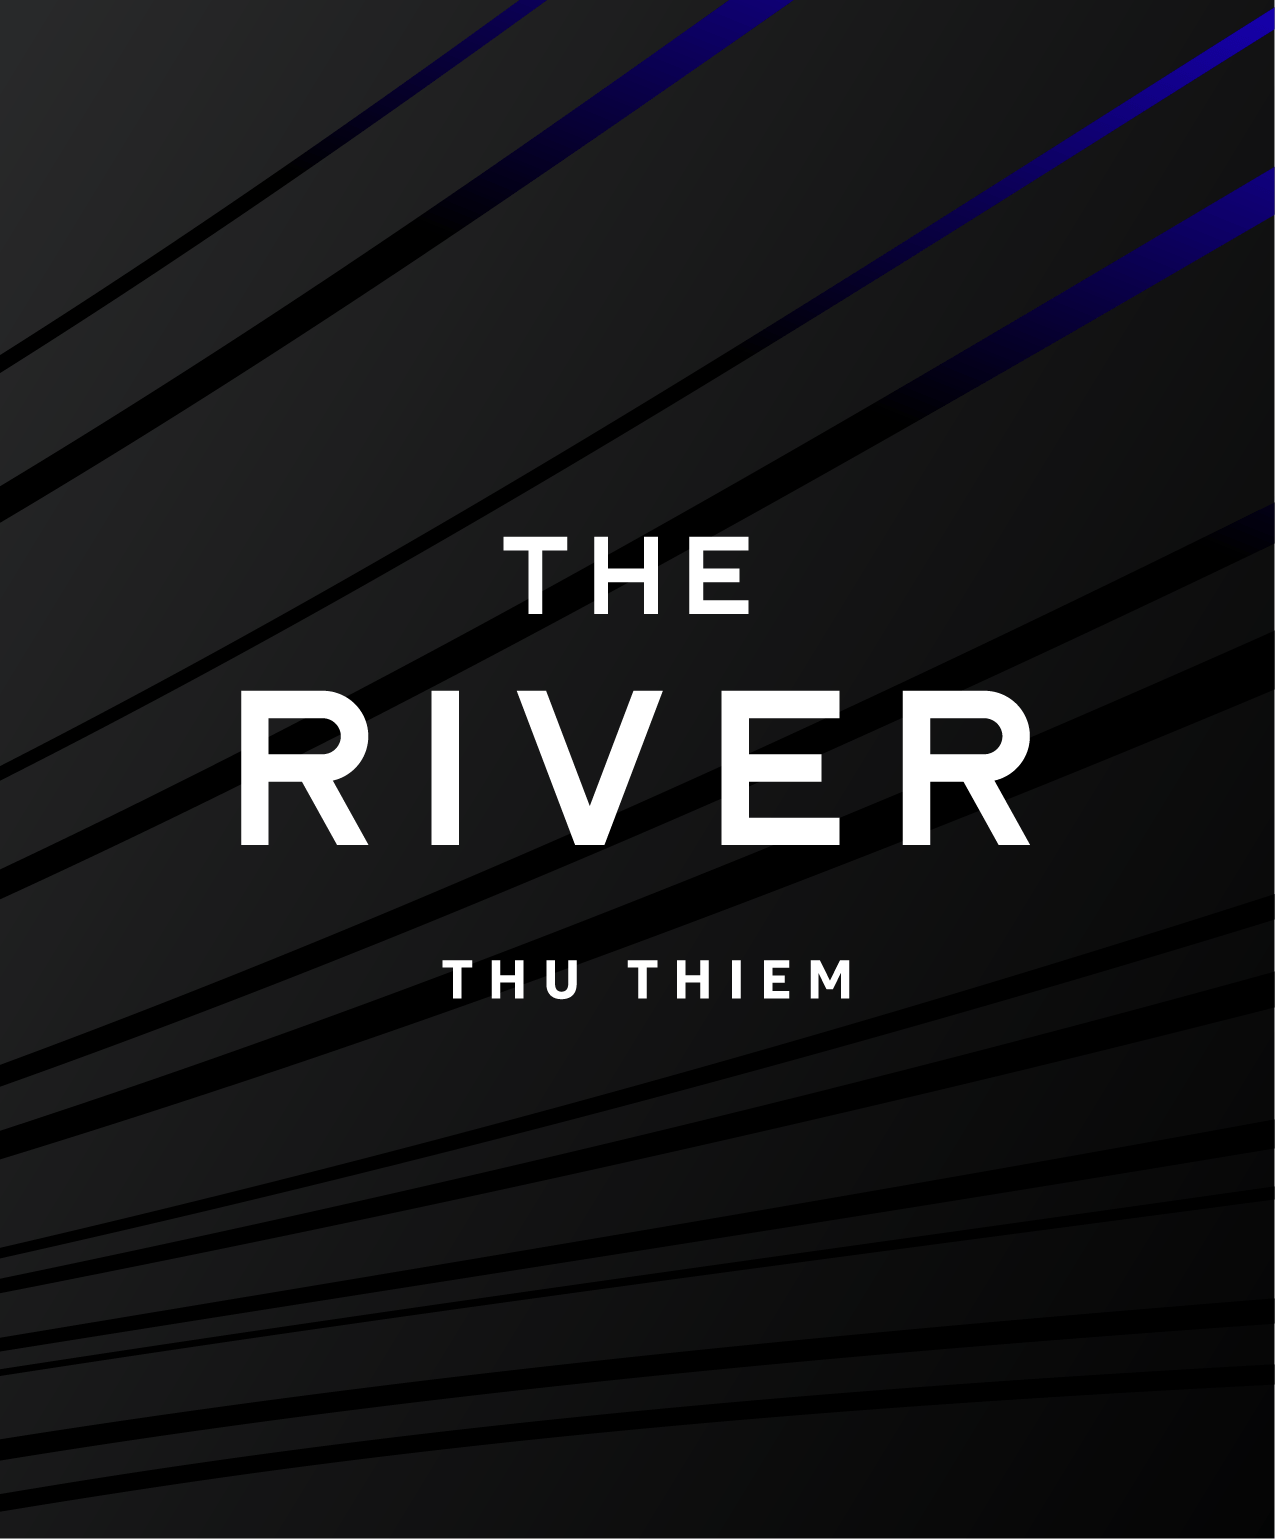 The River Thủ Thiêm